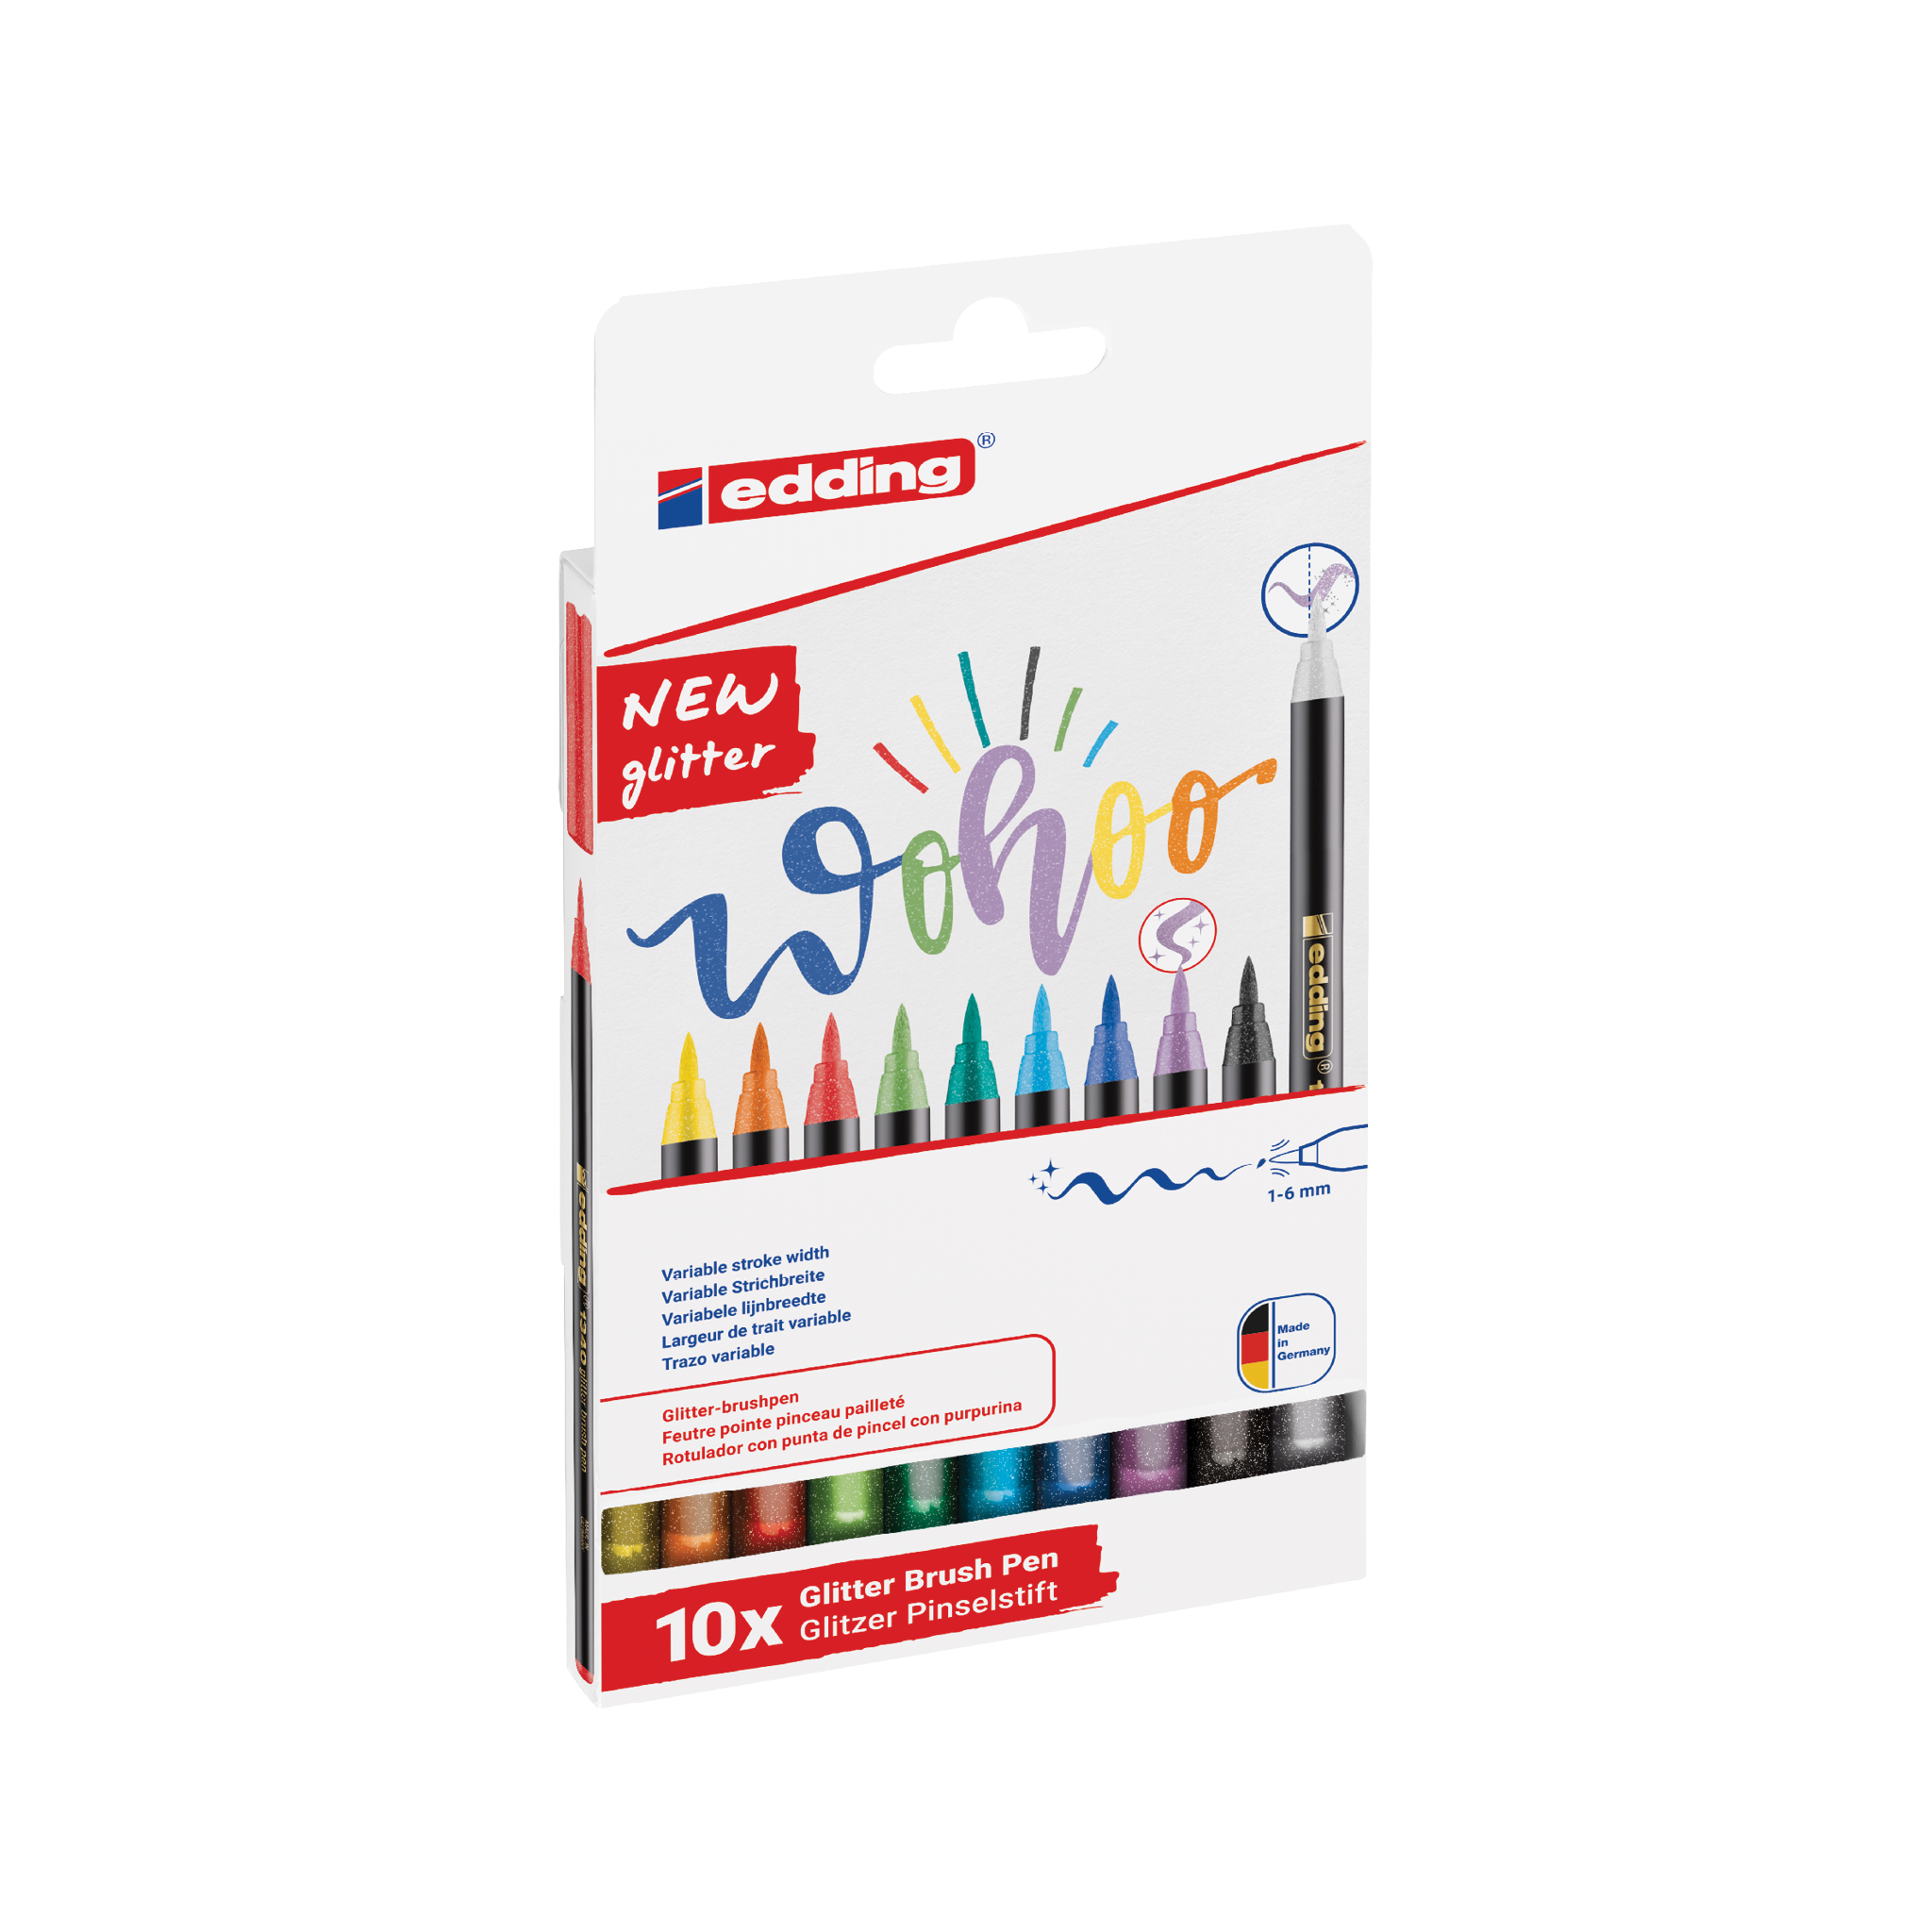 Eine Packung edding 1340 glitzer Pinselstift 10er-Set, ideal für Handlettering, präsentiert eine Vielzahl lebendiger Farben mit kunstvollen Kritzeleien auf der Vorderseite, die den glitzernden Tinteneffekt demonstrieren.